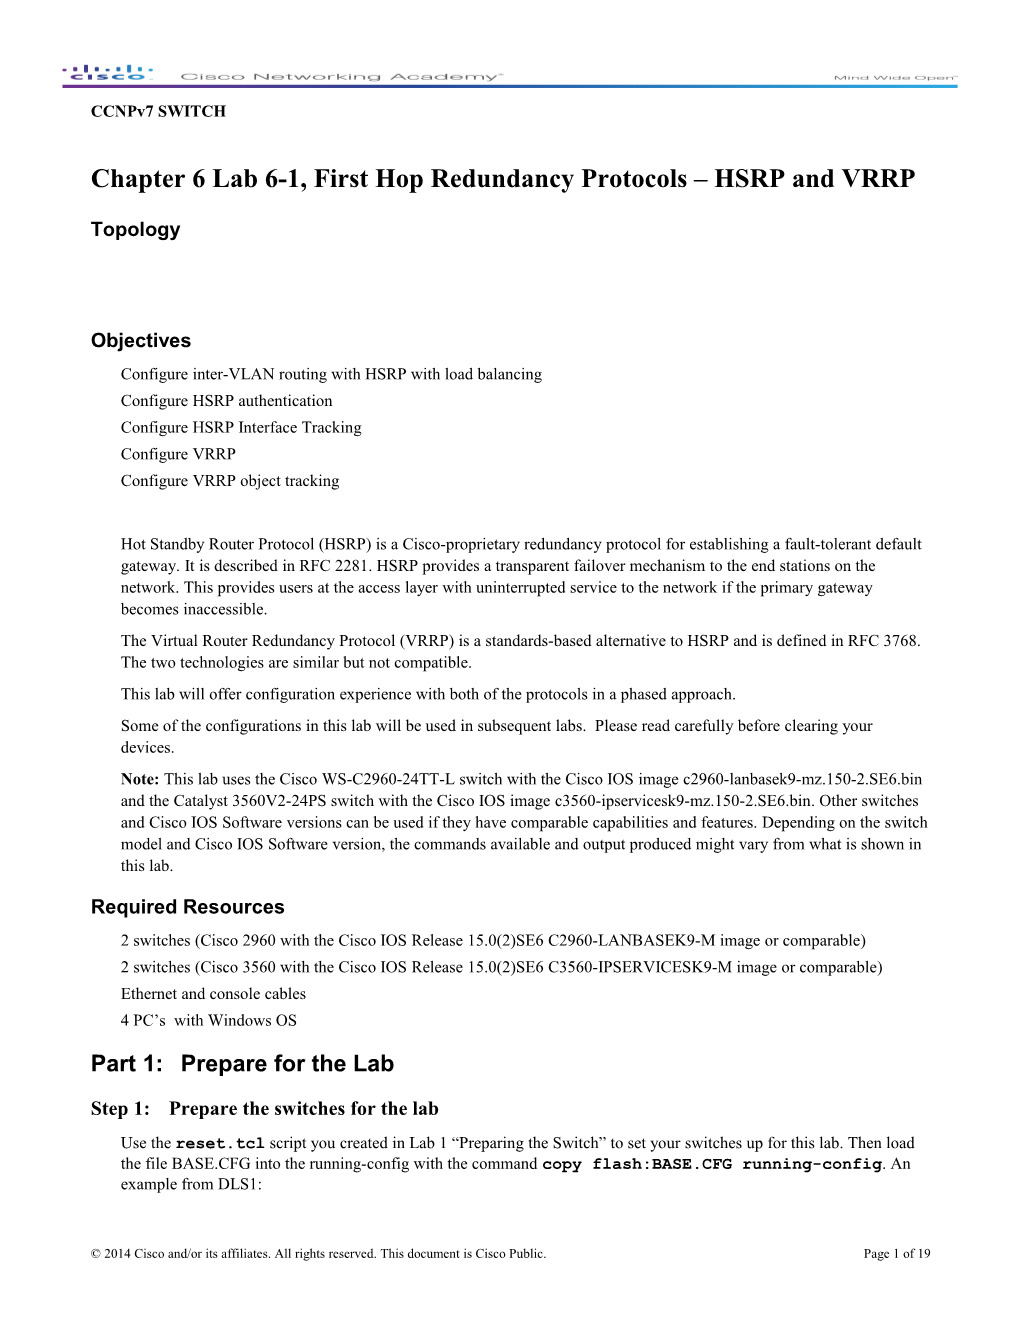 Chapter 6 Lab 6-1, First Hop Redundancy Protocols (HSRP, VRRP)